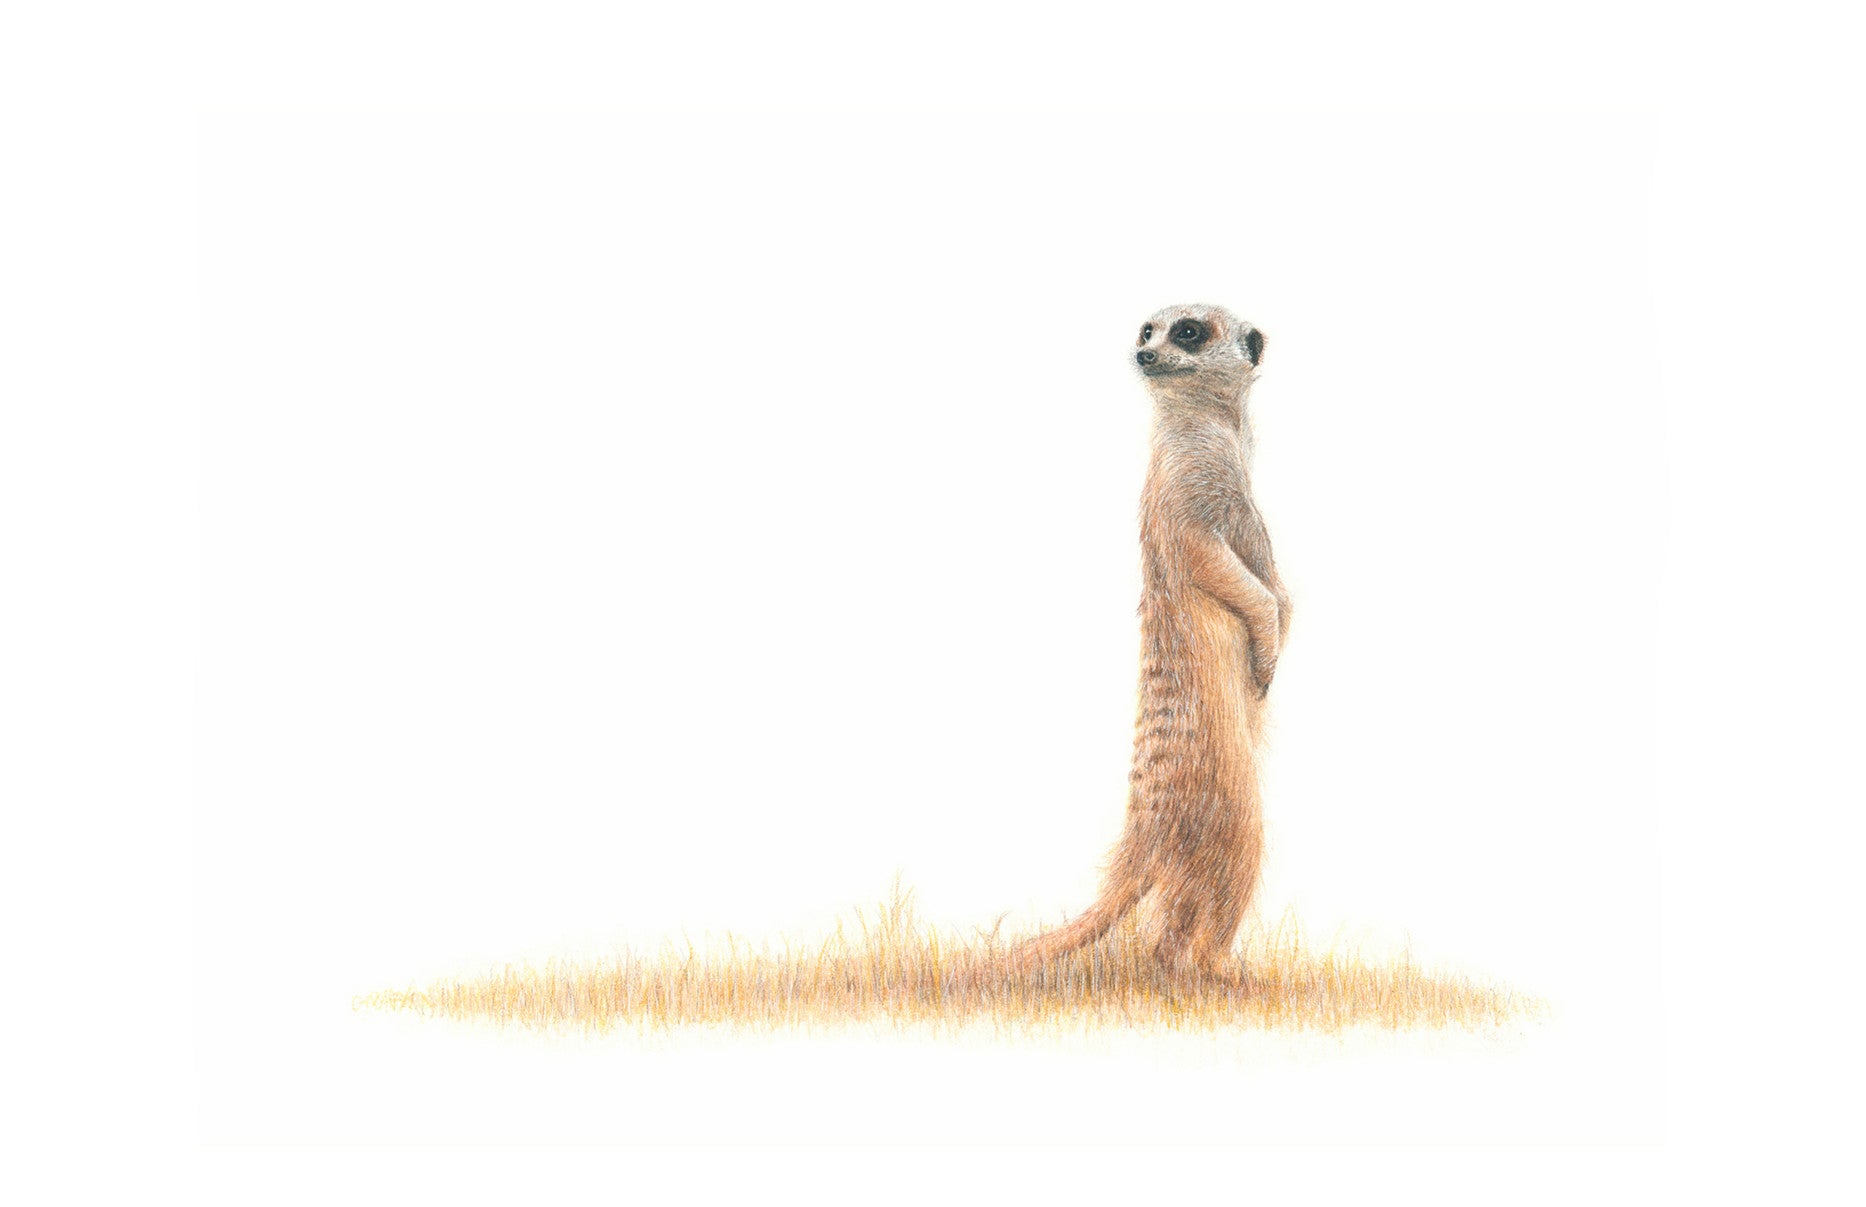 Meerkat artwork in pencil